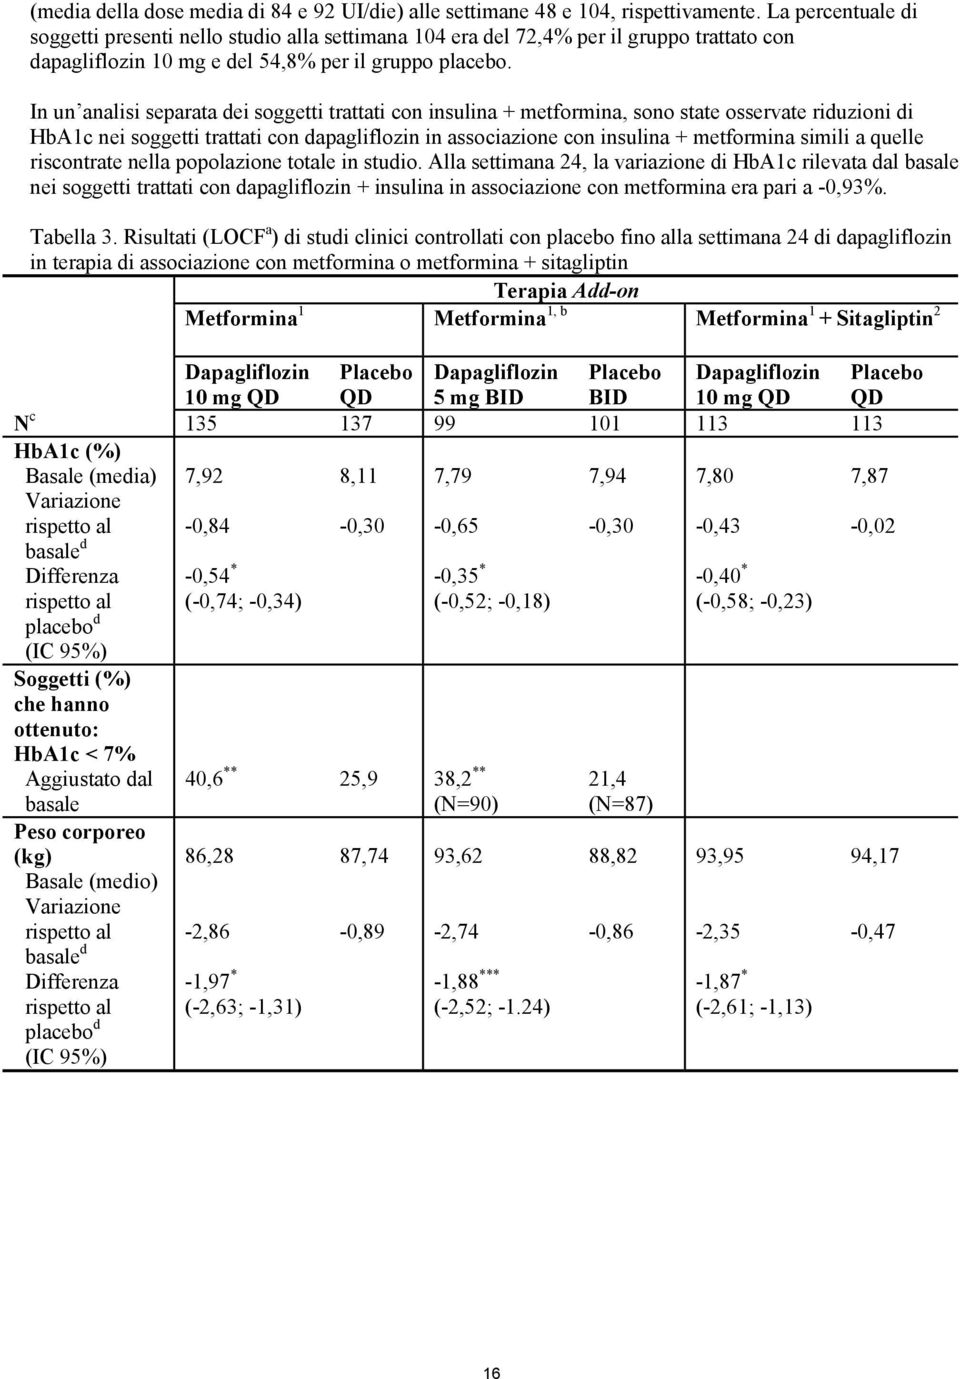 In un analisi separata dei soggetti trattati con insulina + metformina, sono state osservate riduzioni di HbA1c nei soggetti trattati con dapagliflozin in associazione con insulina + metformina